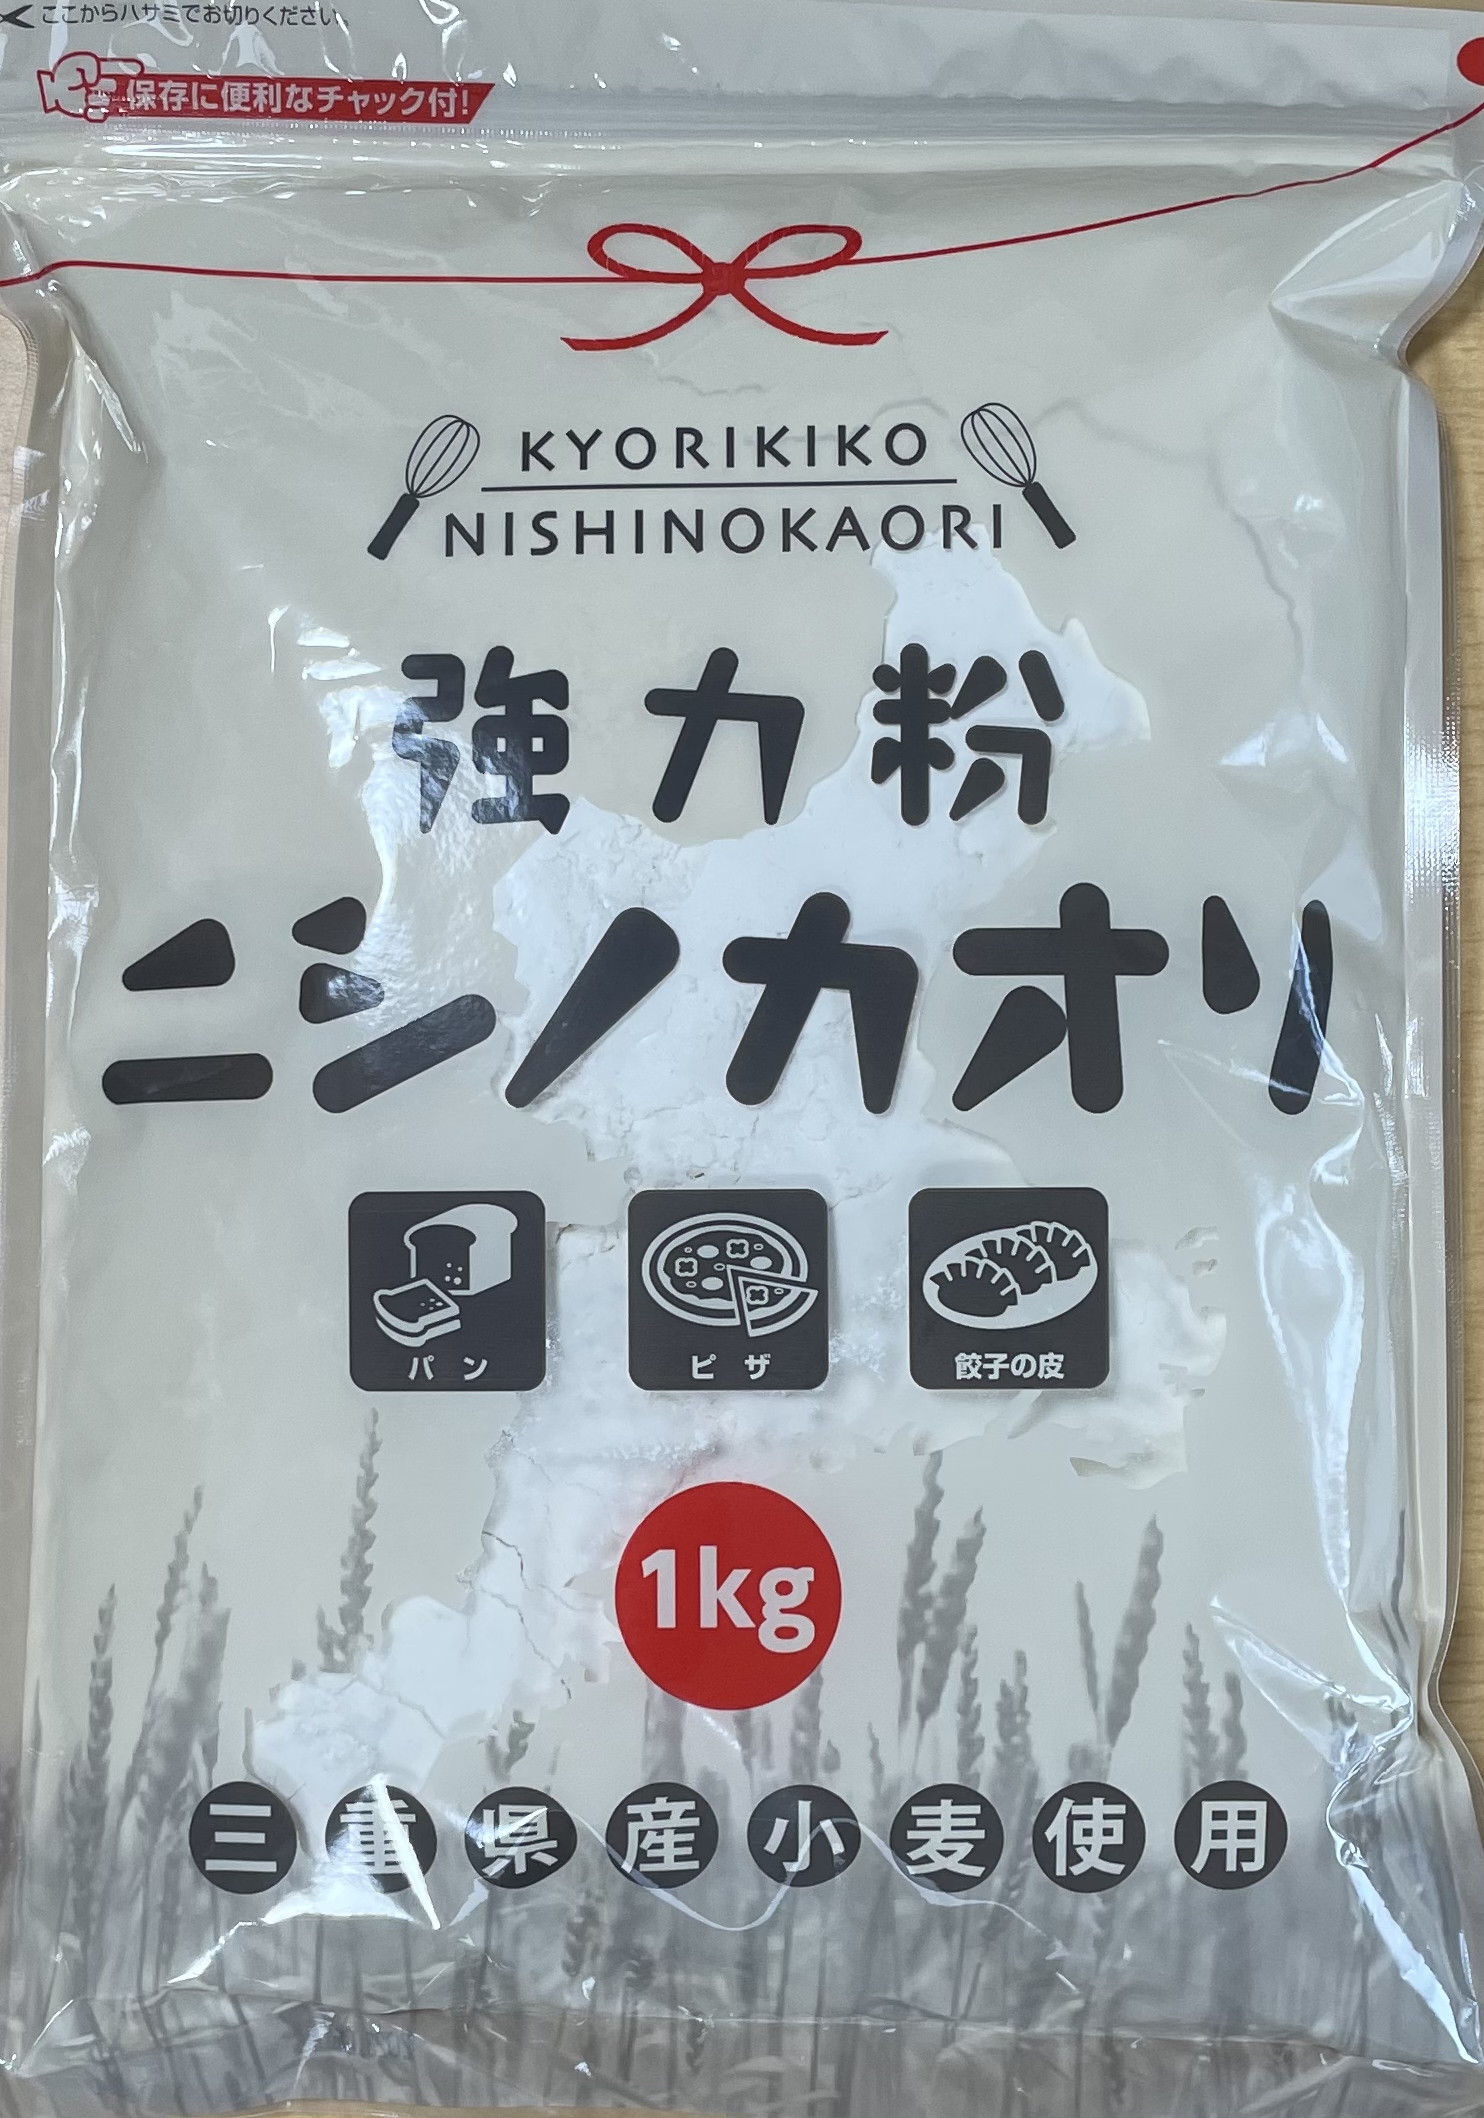 ニシノカオリ 1kg 5袋入り チャック袋【平和製粉】【送料無料】